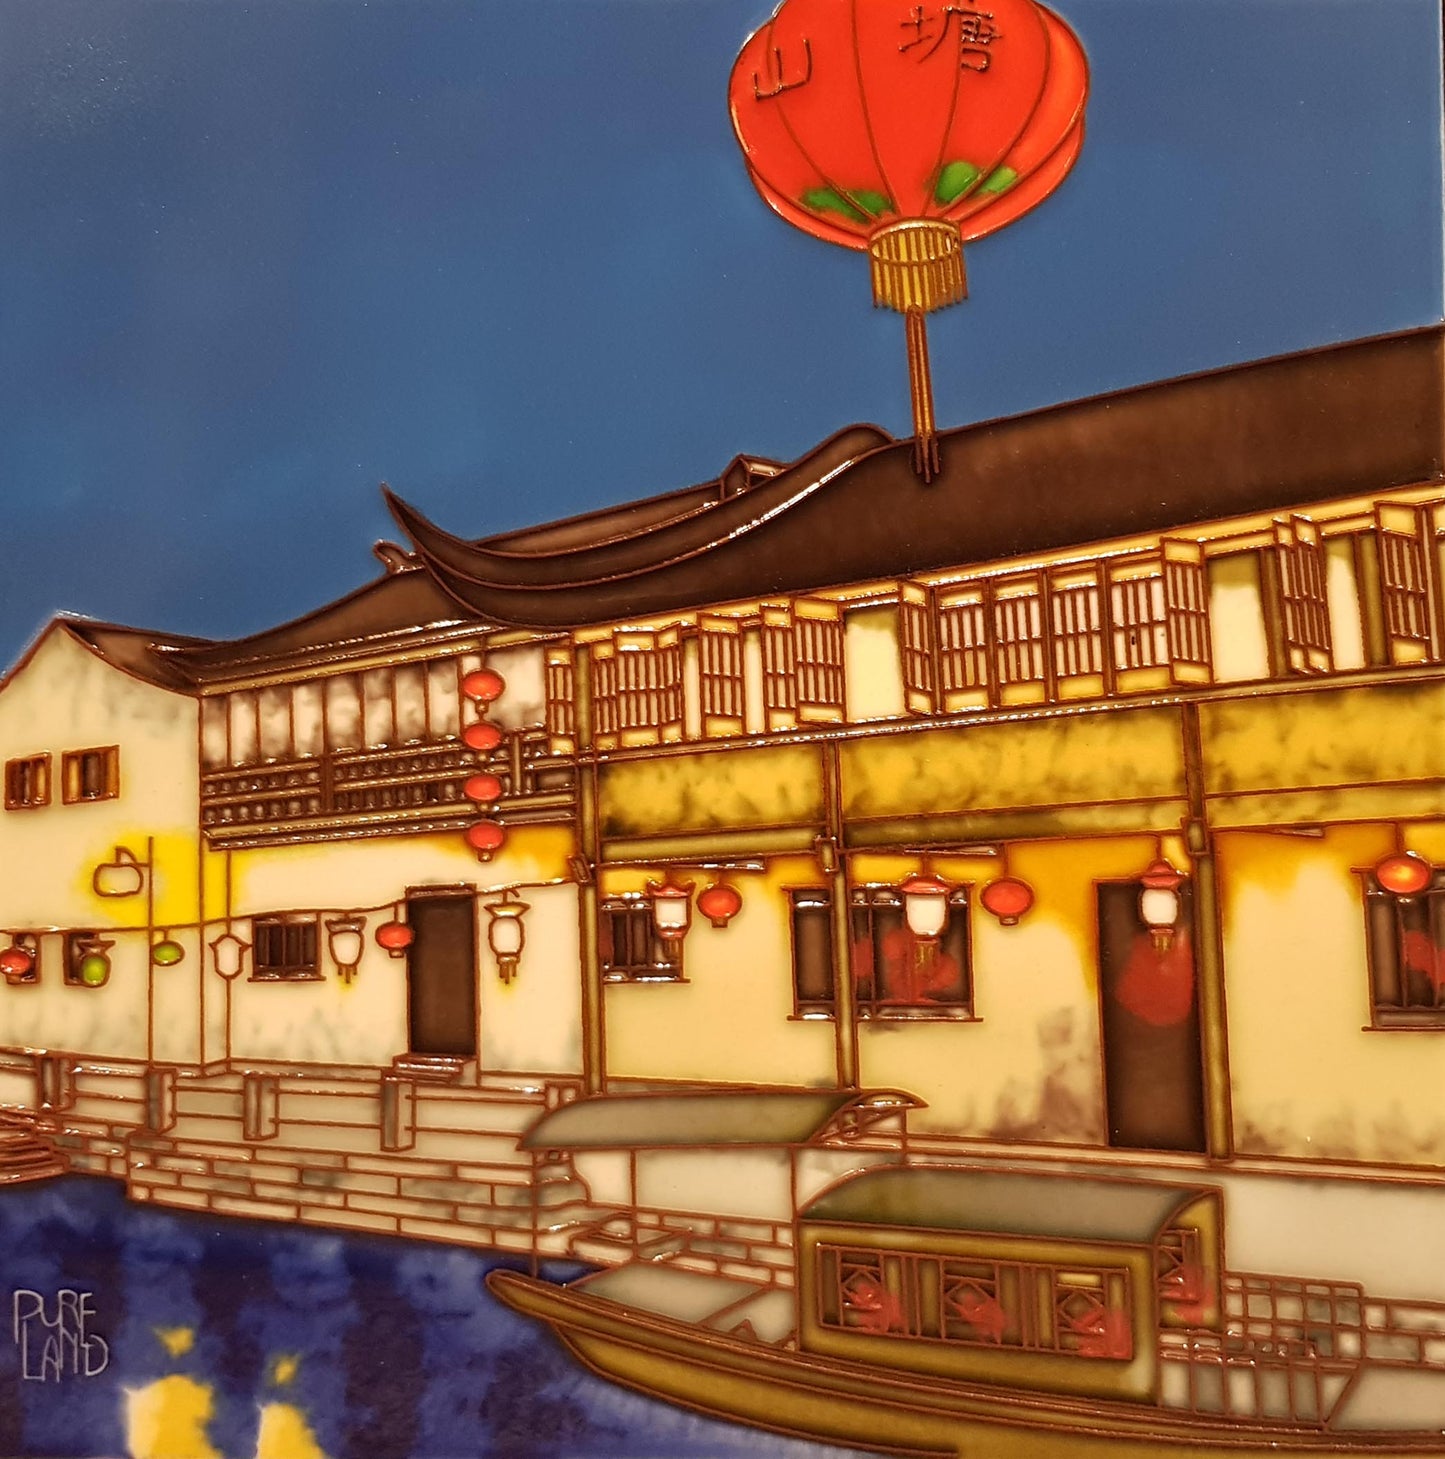 3727 Chinatown Lantern 30cm x 30cm Pureland Ceramic Tile